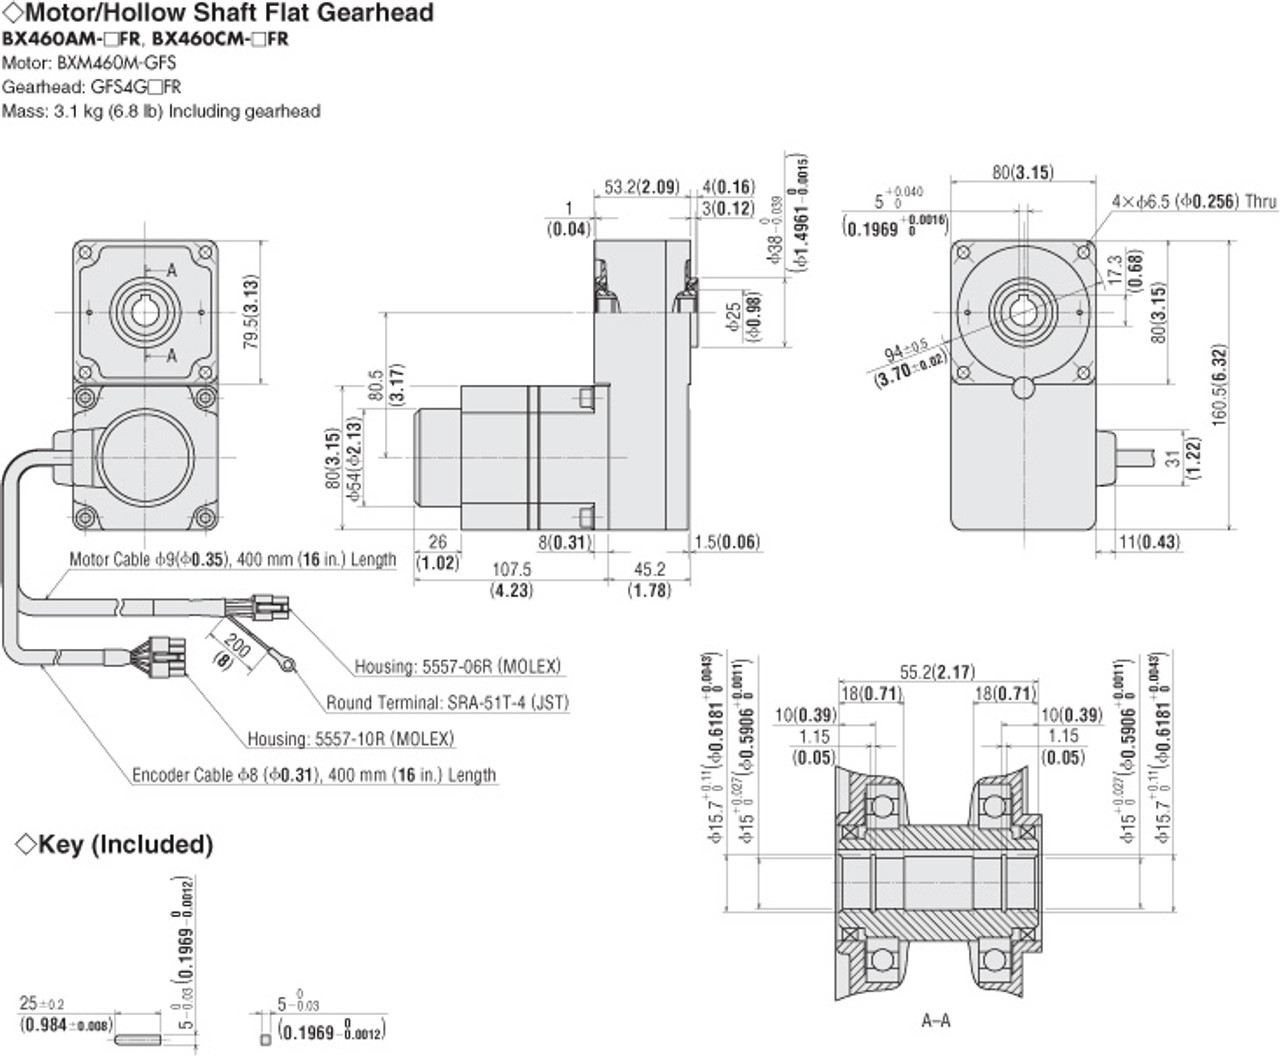 BXM460M-GFS / GFS4G200FR - Dimensions